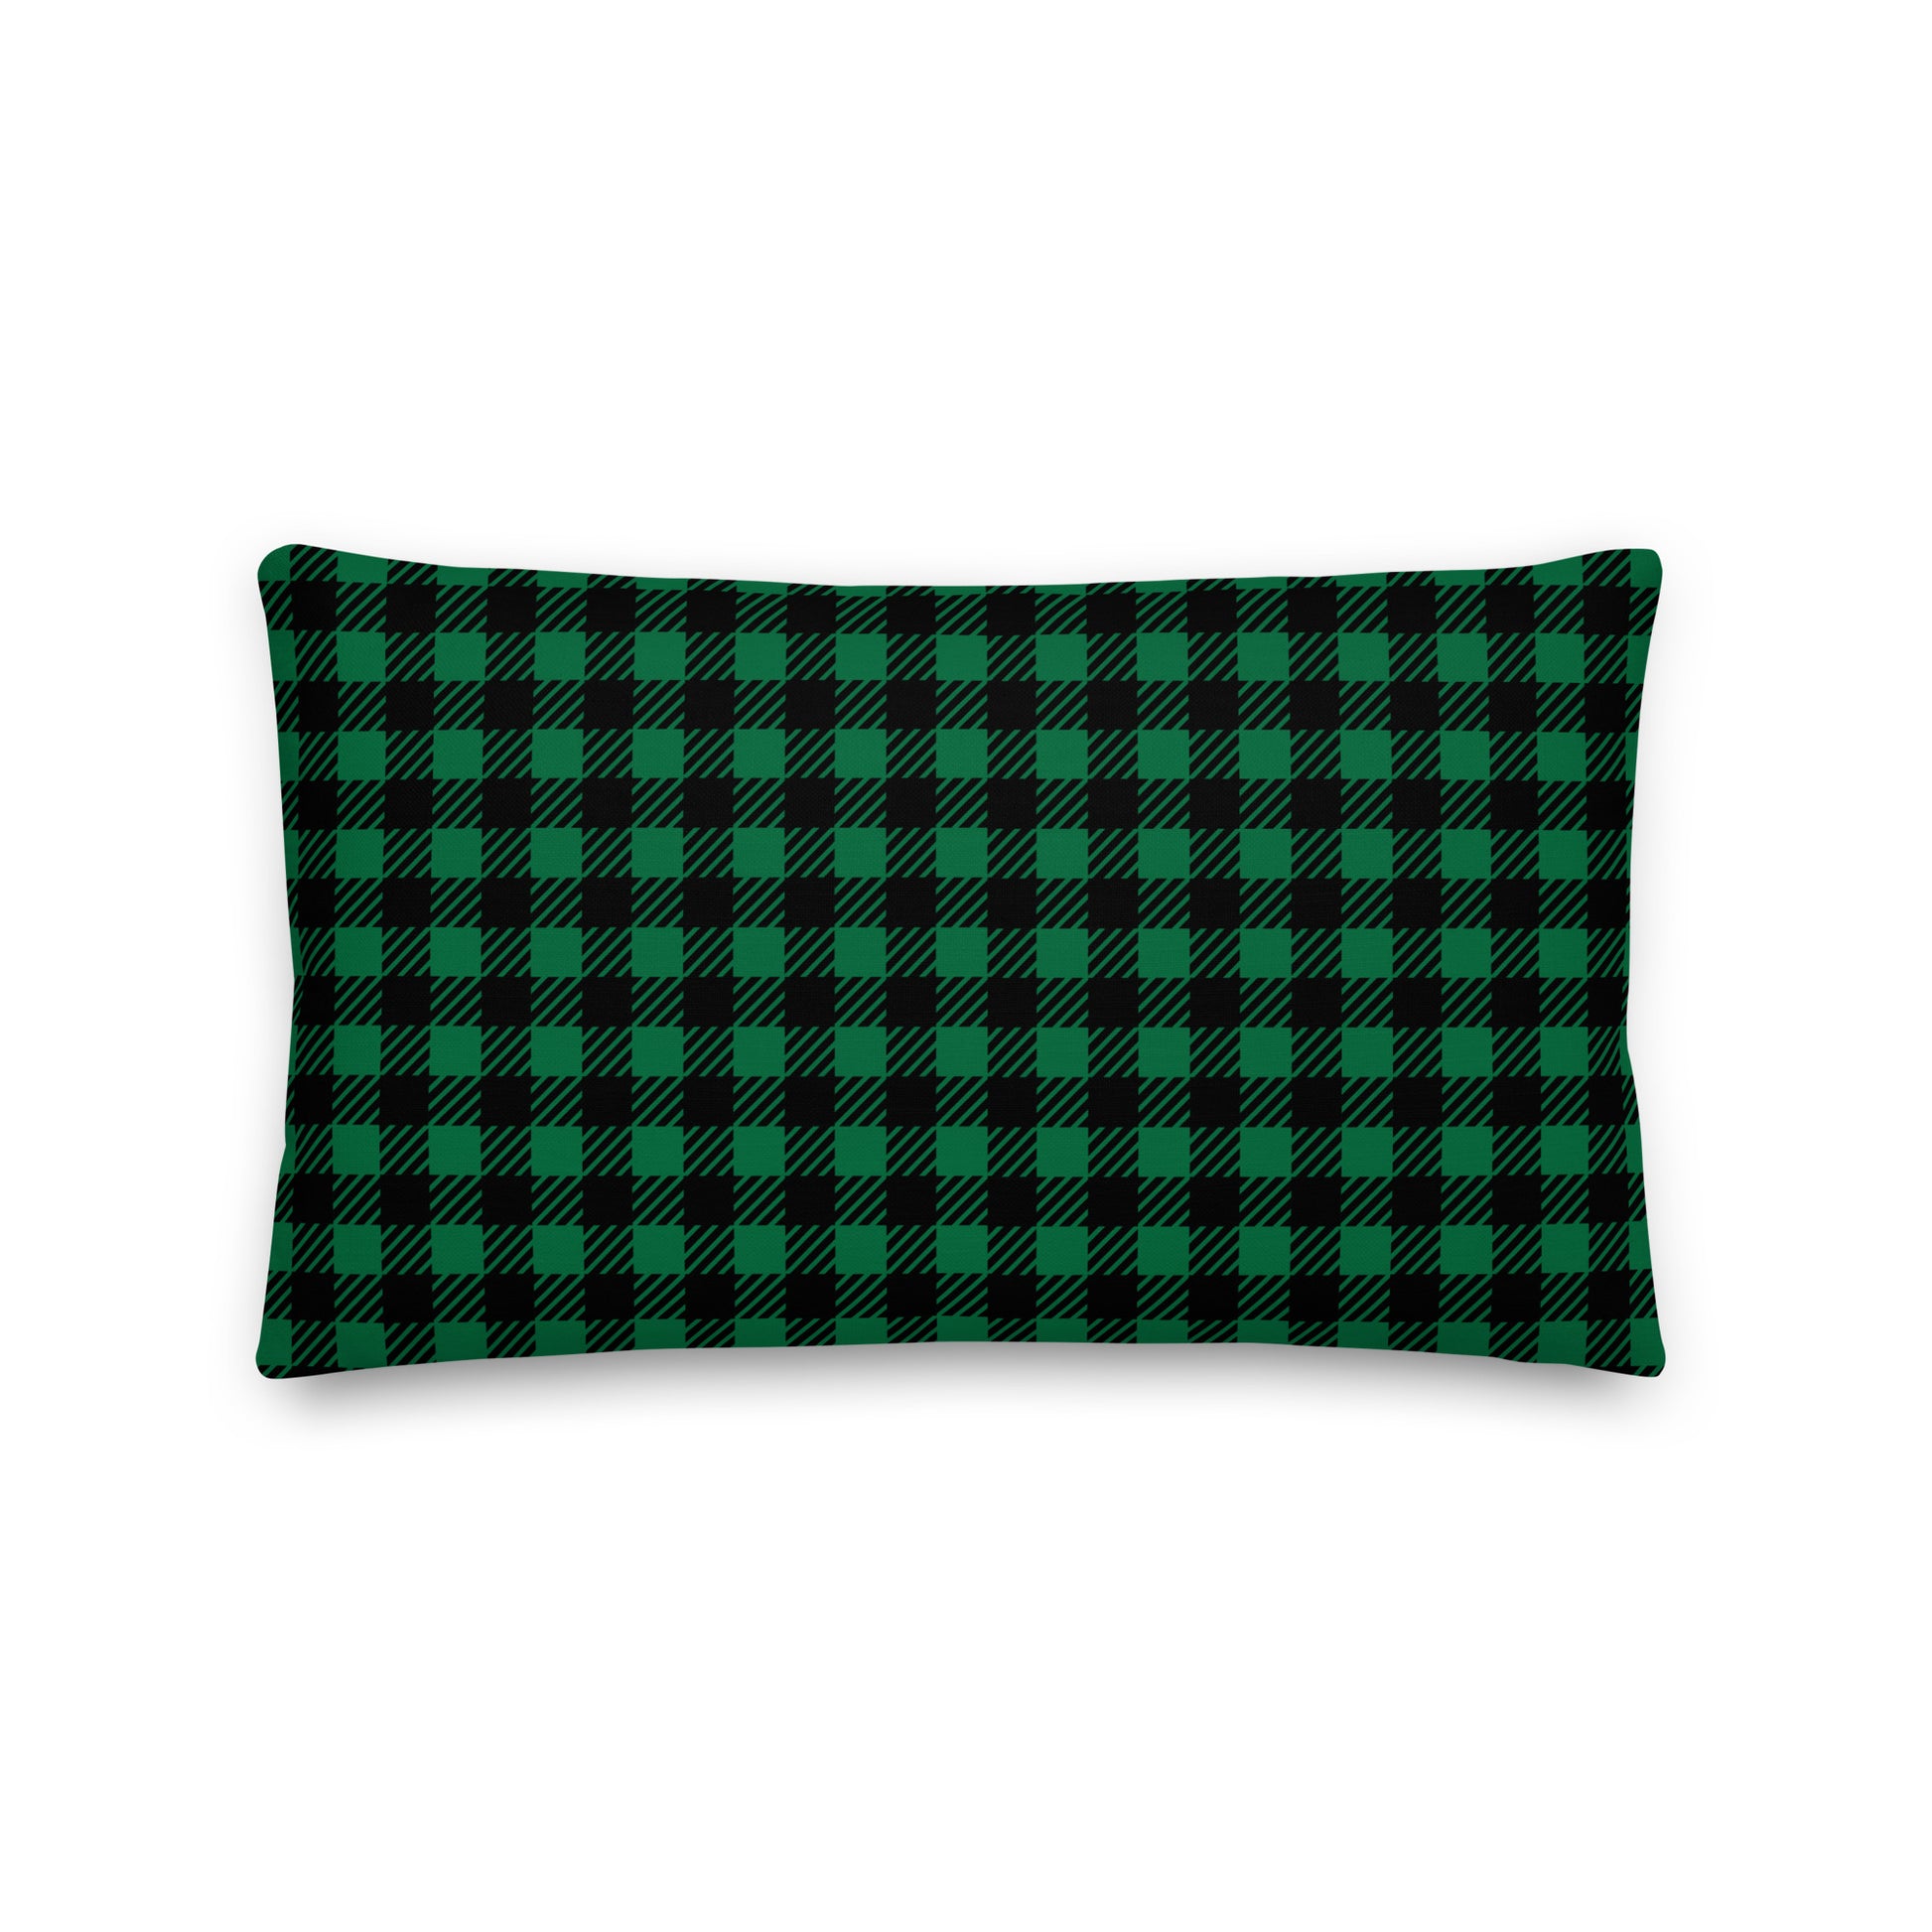 Farmhouse Throw Pillow - Buffalo Plaid • YXE Saskatoon • YHM Designs - Image 02